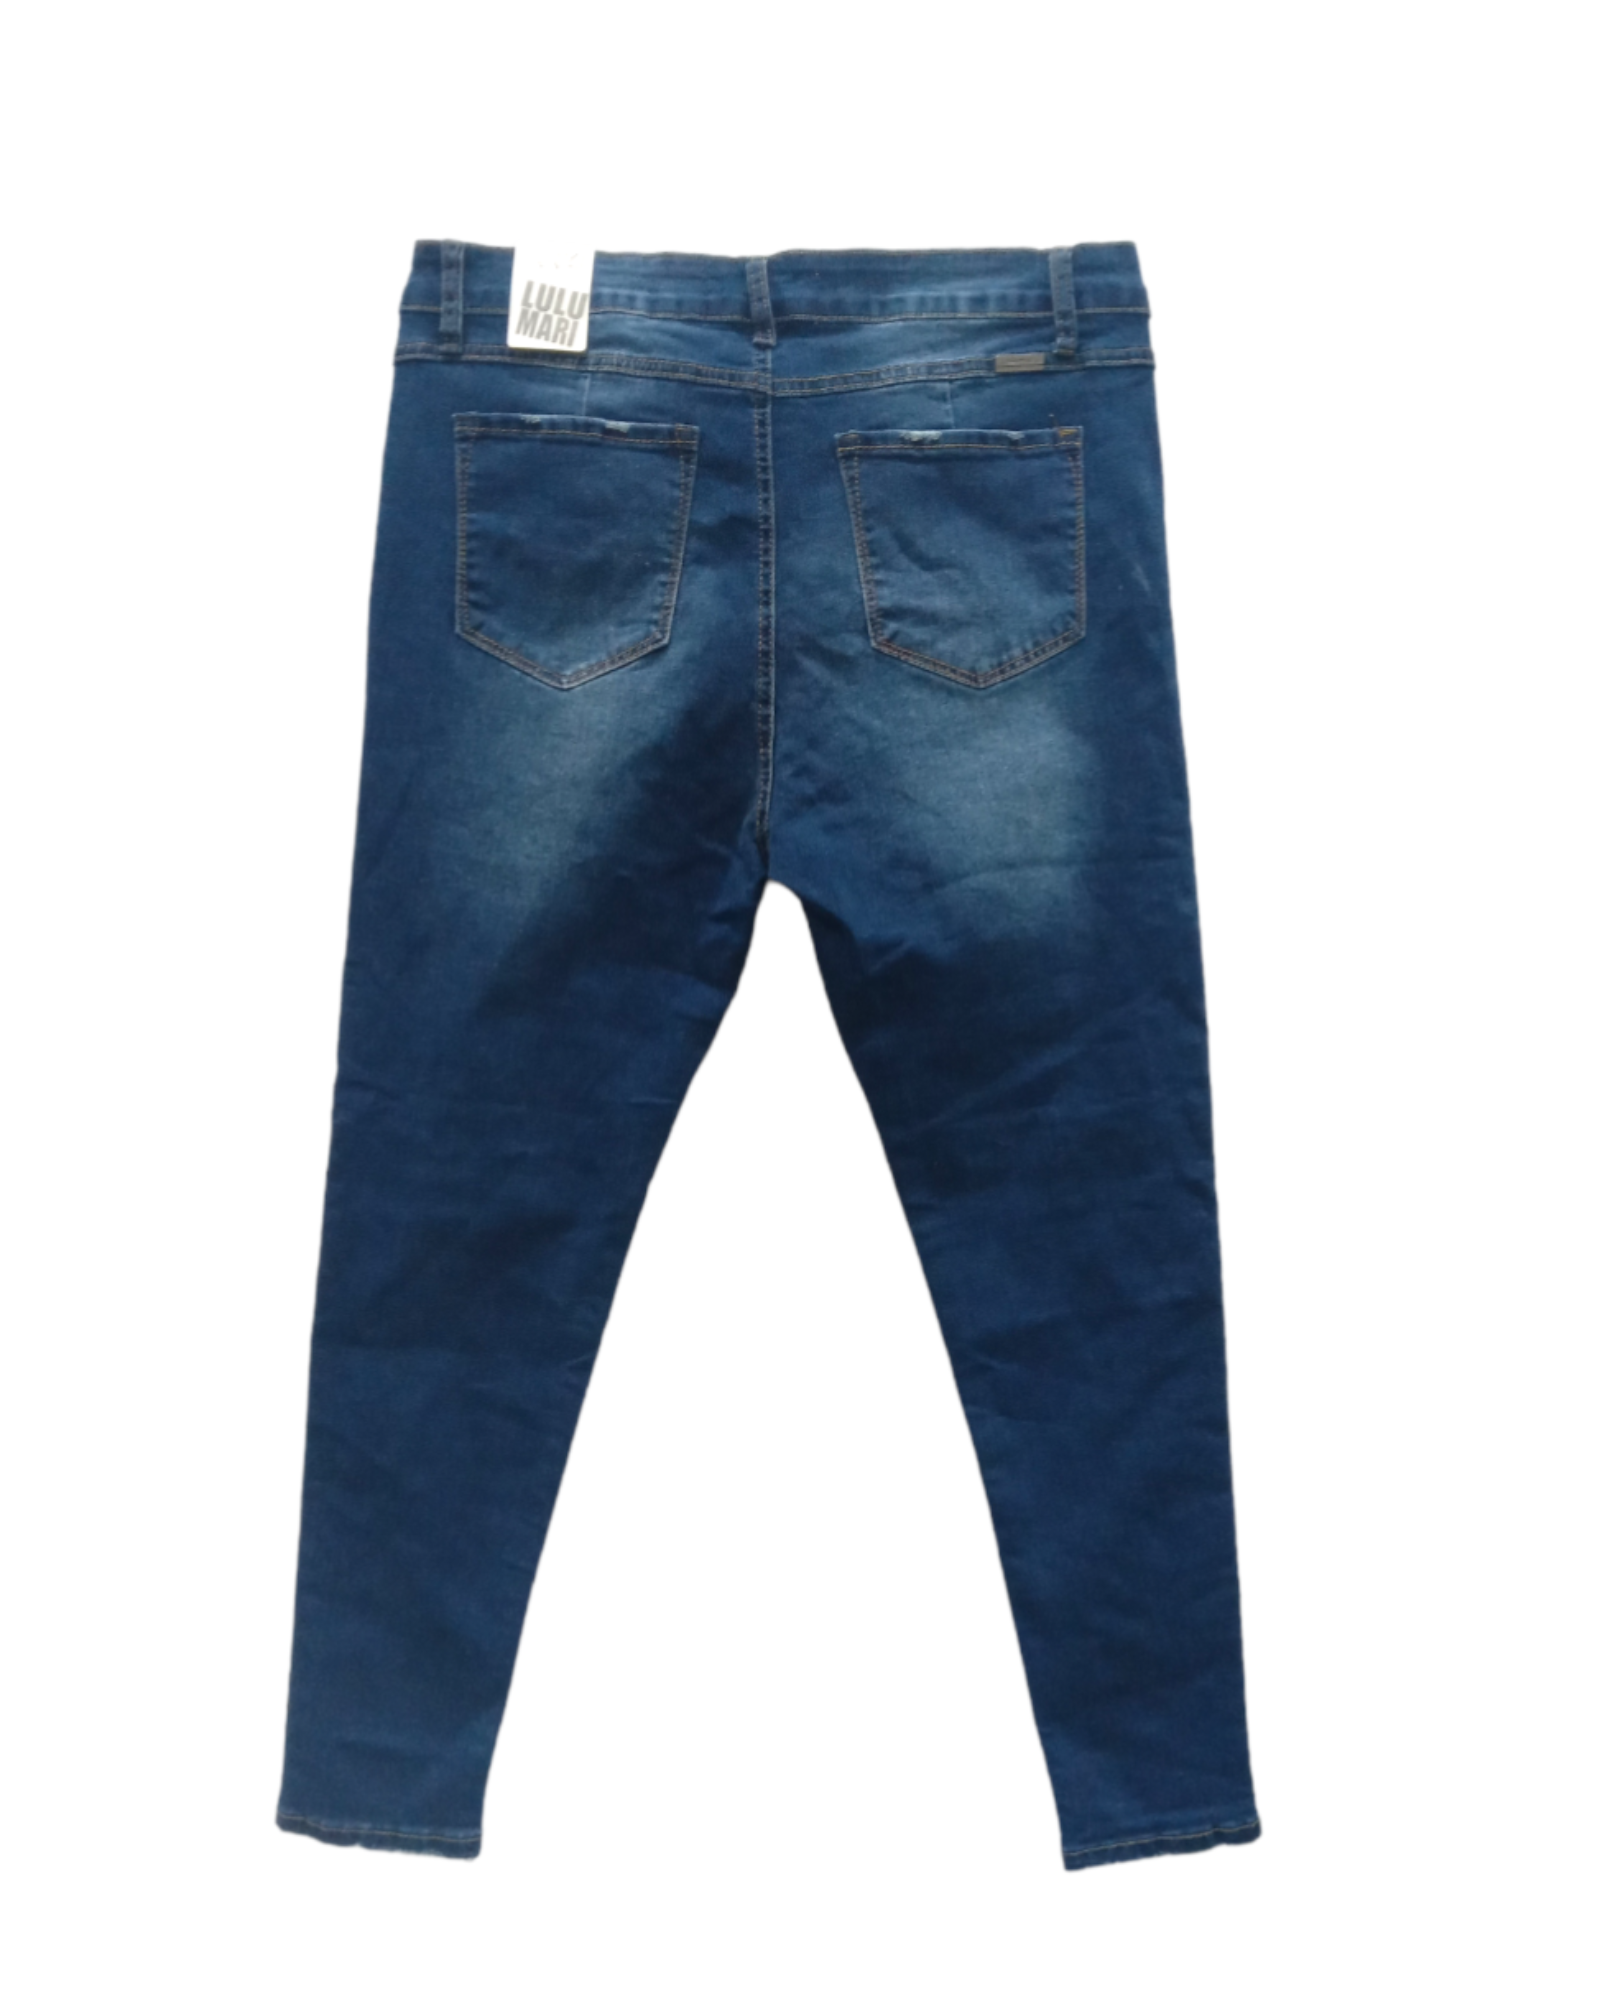 Jeans Skinny Lulumari 2